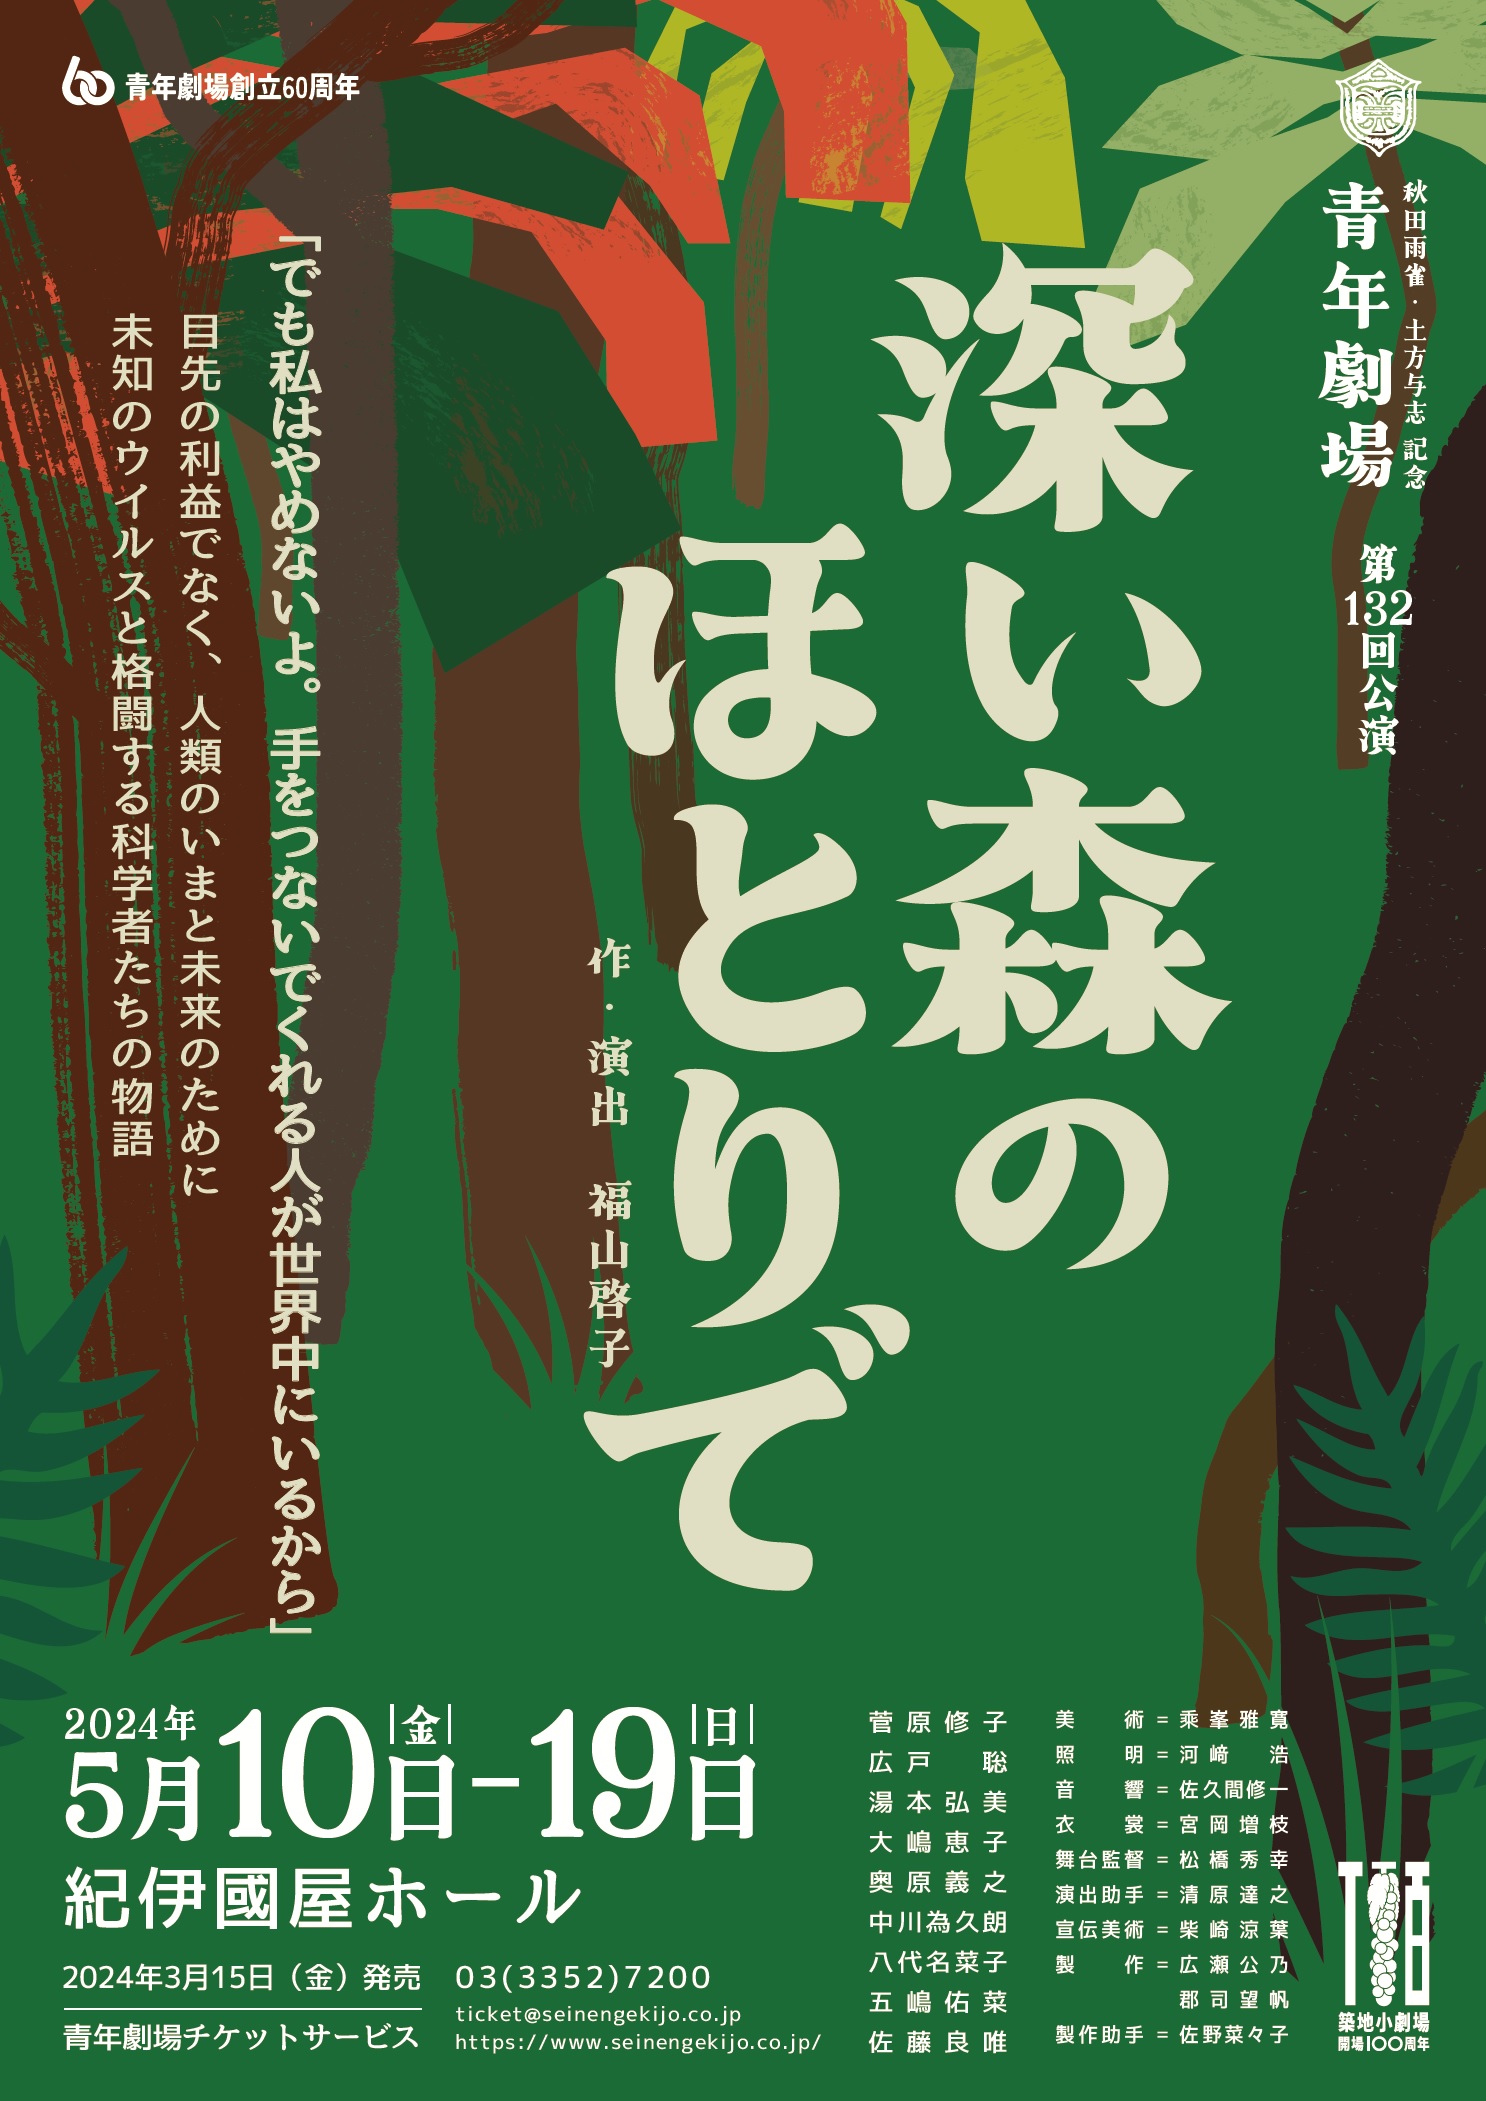 青年劇場創立60周年記念<br>秋田雨雀･土方与志記念青年劇場<br>『深い森のほとりで』